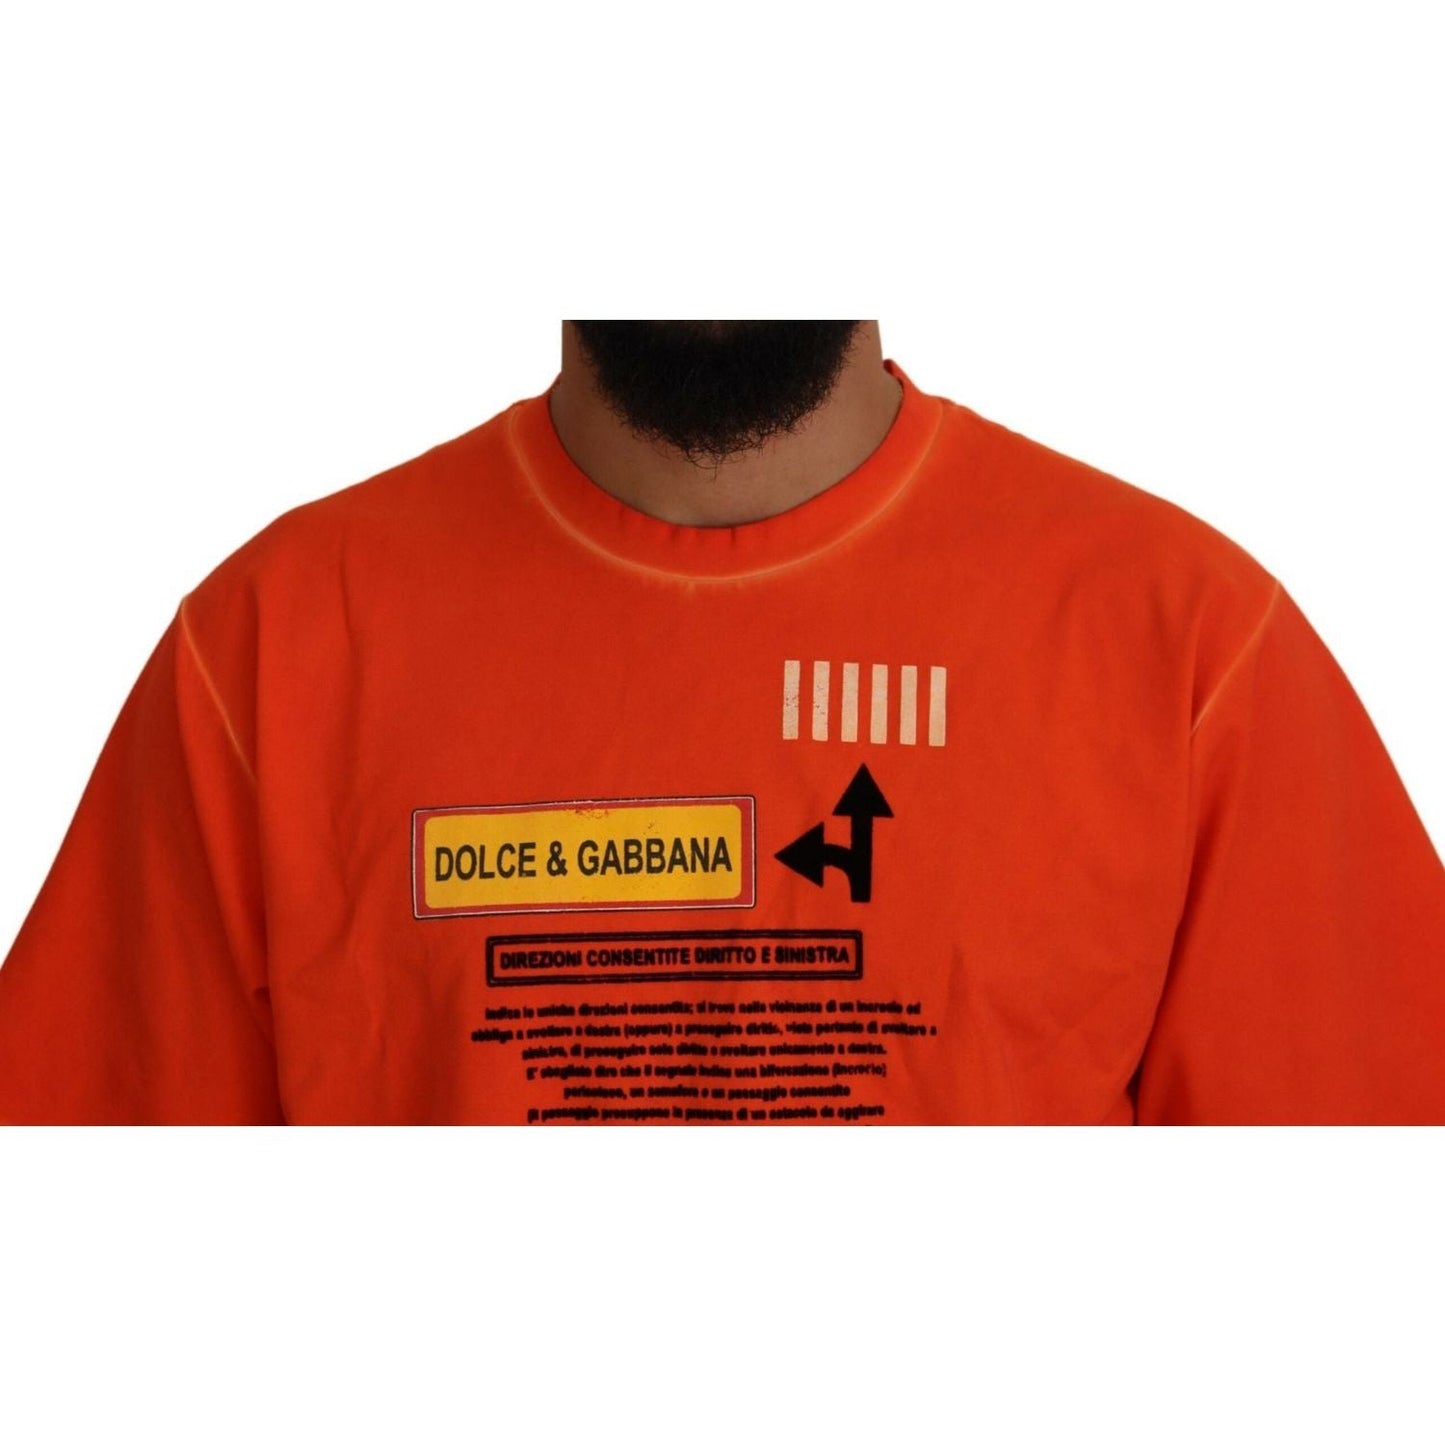 Dolce & Gabbana Elegant Crew Neck Orange Tee orange-cotton-logo-short-sleeve-t-shirt IMG_6477-scaled-ab3d1445-aa3.jpg